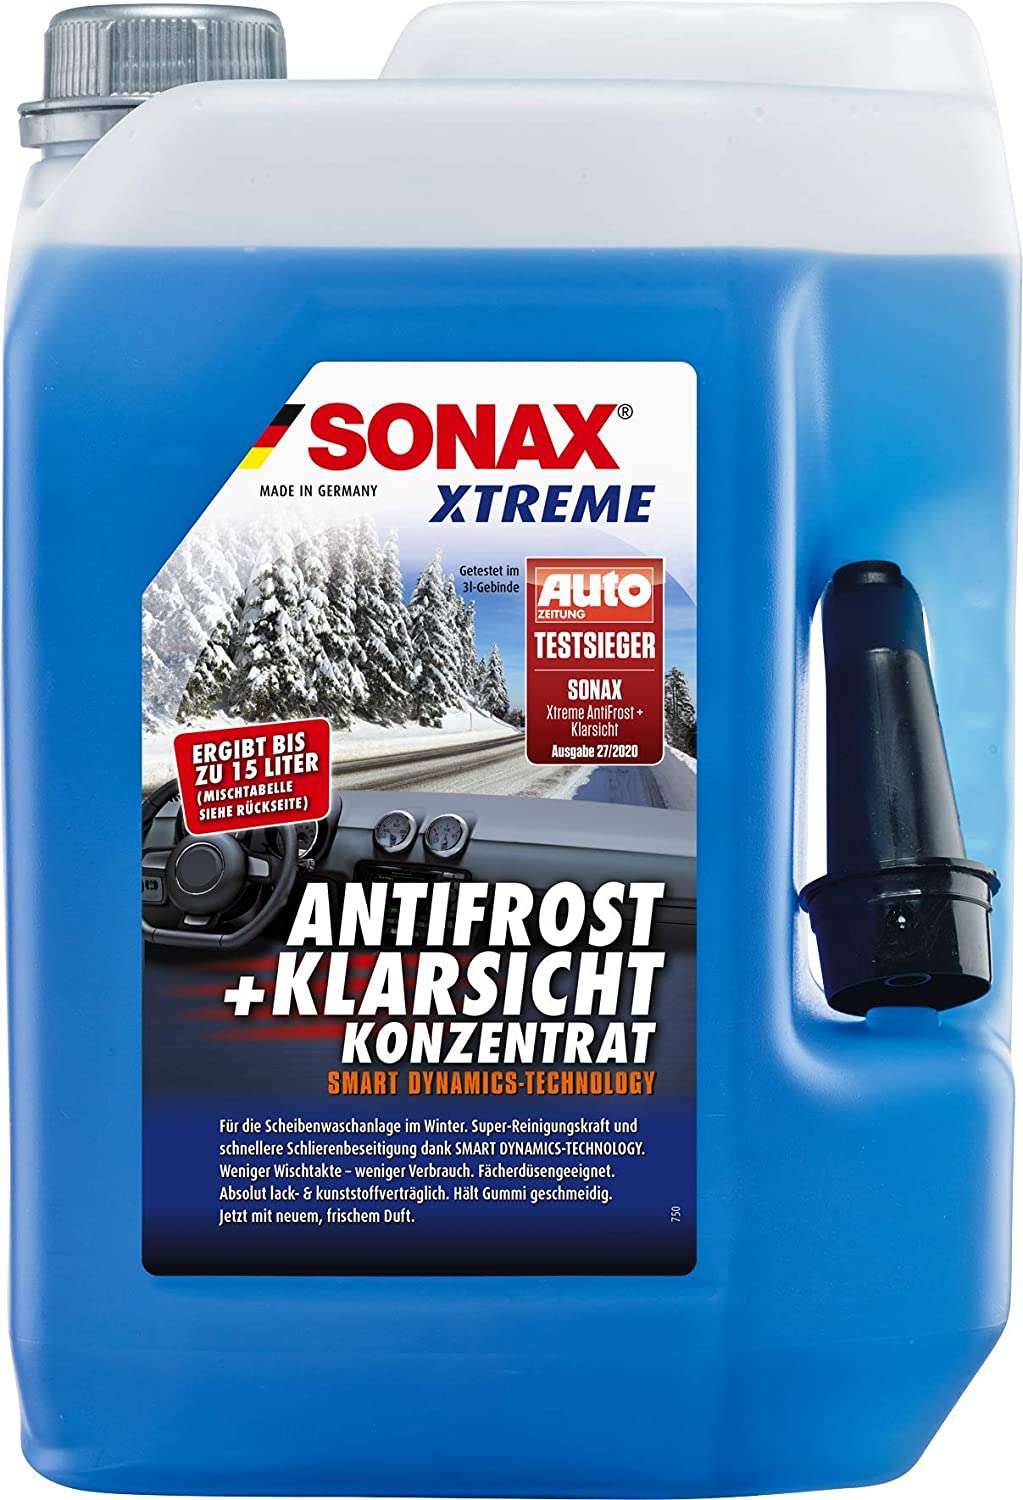 AntiFrost+Klarsicht Konzentrat von Sonax im 1 Liter Gebinde